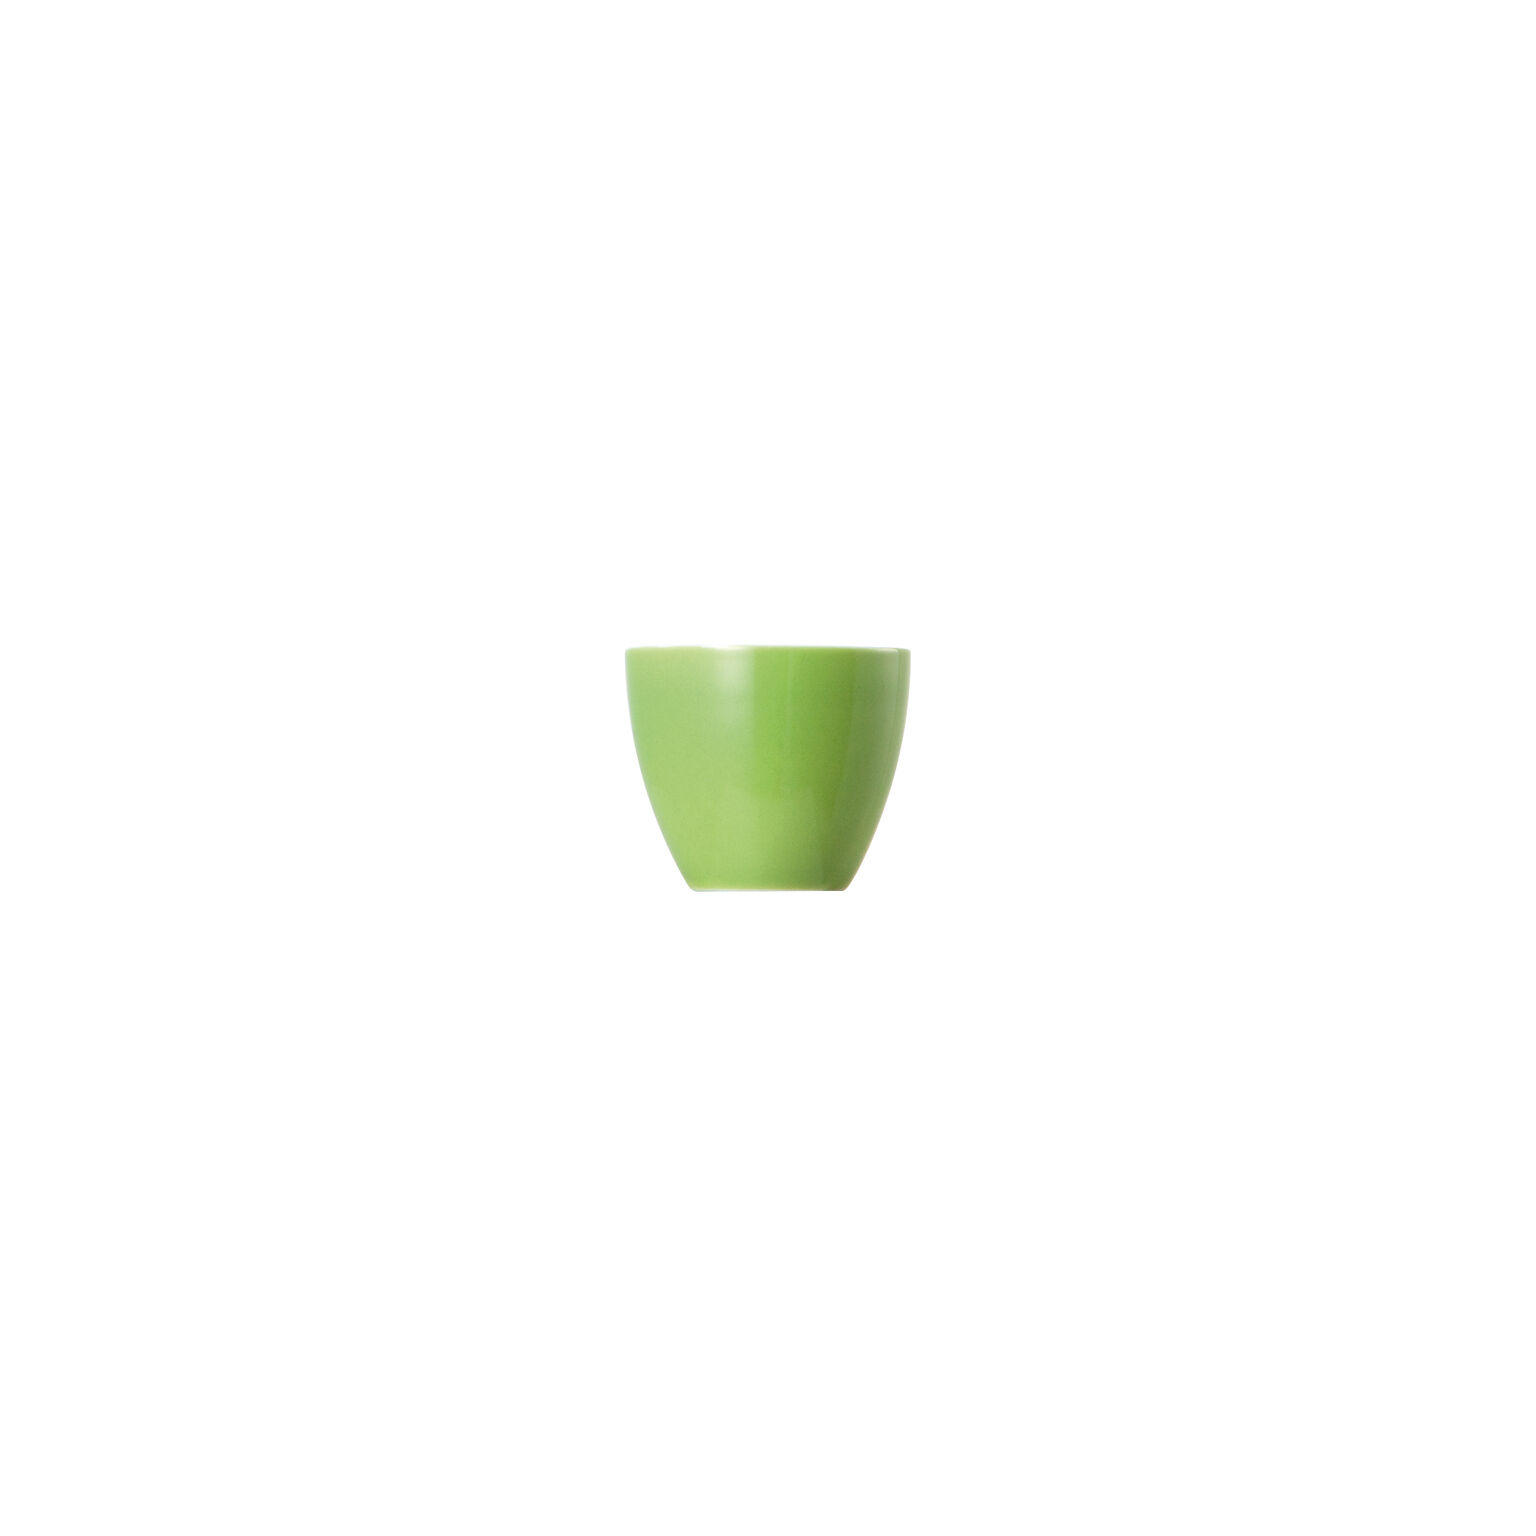 Thomas Sunny Day Apple Green Schüssel rund 25 cm gruen Schale gross Porzellan ge 